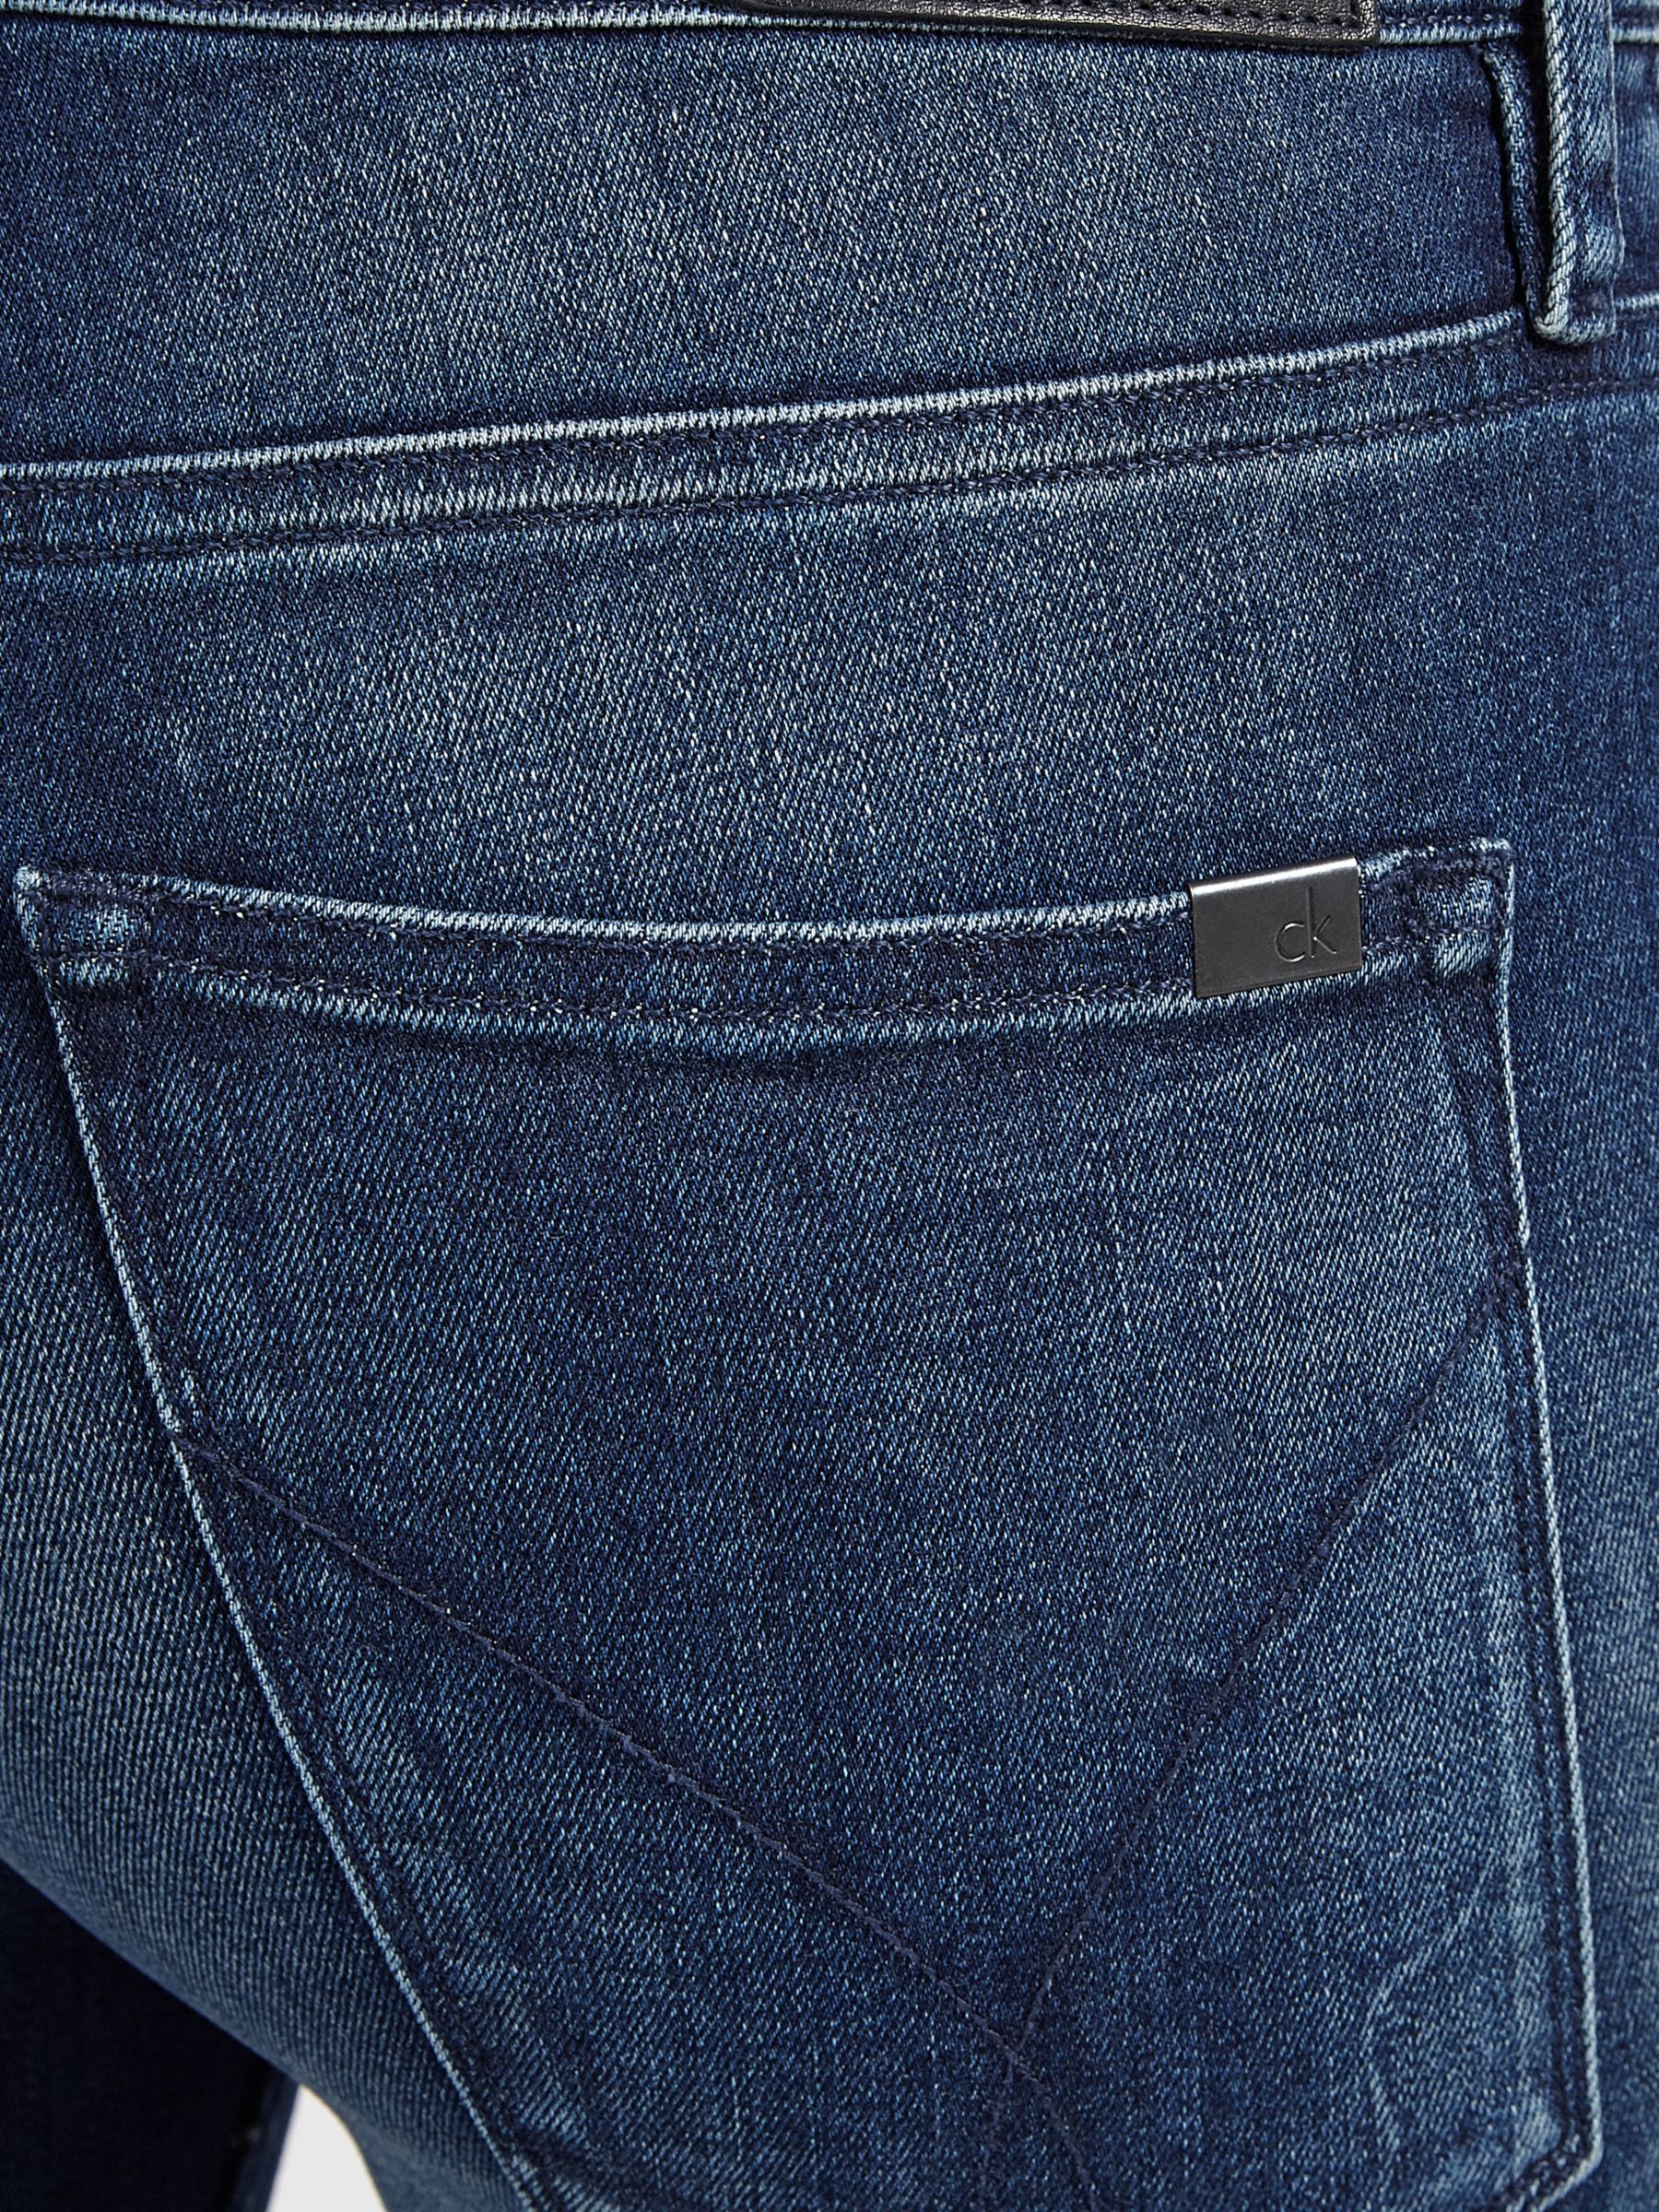 calvin klein flare jeans